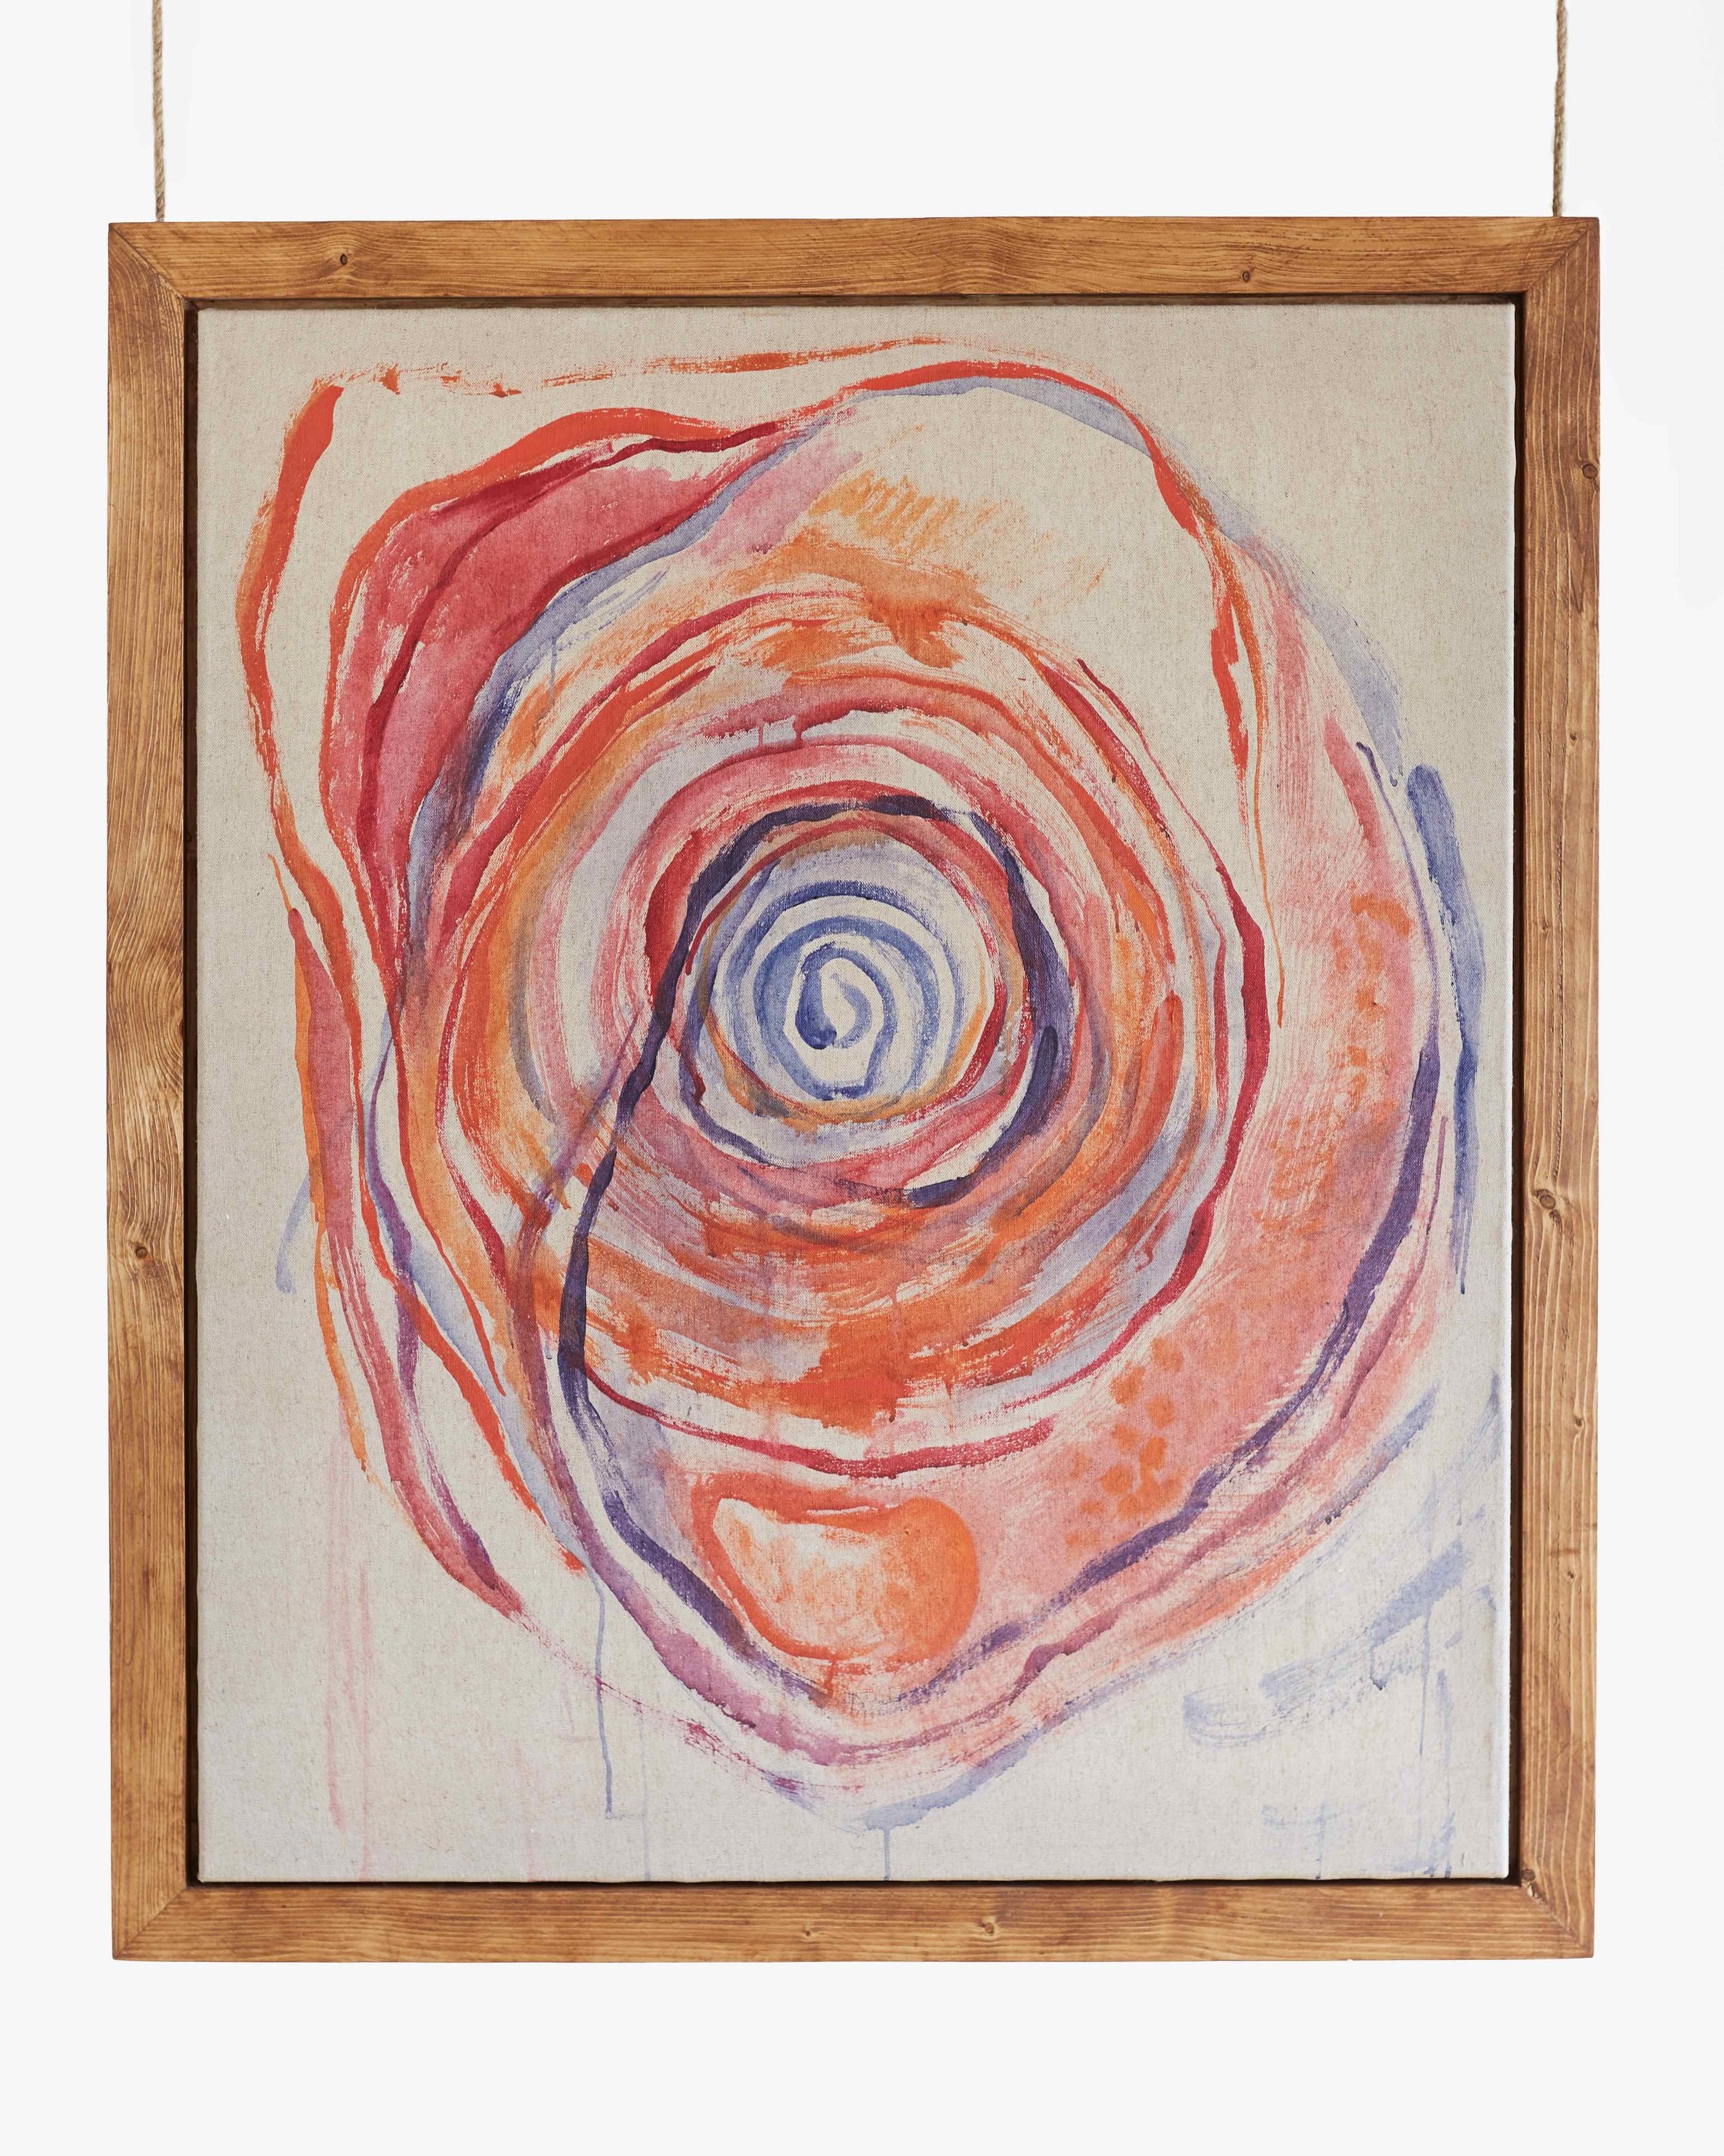   Vortex de transformación , 2019, Acrylic on canvas, handmade oak frame. 140cm x 160cm 